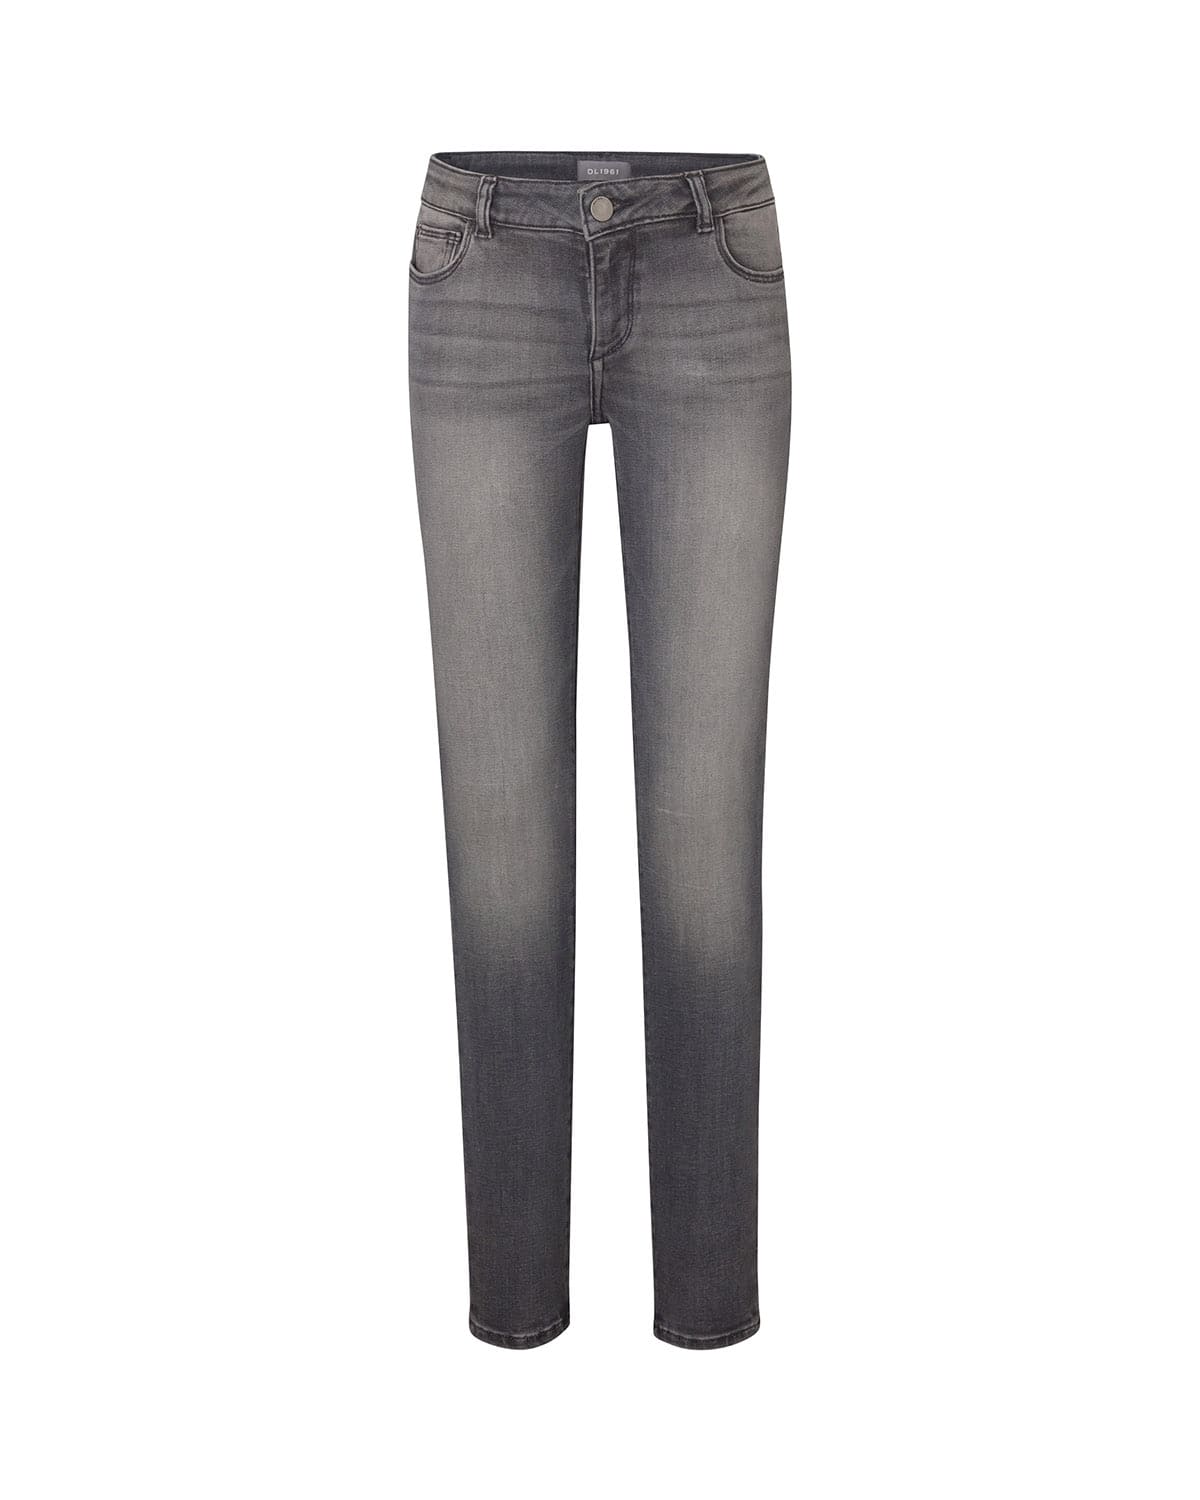 DL1961 Premium Denim Girl's Chloe Denim Skinny Jeans, Size 7-16